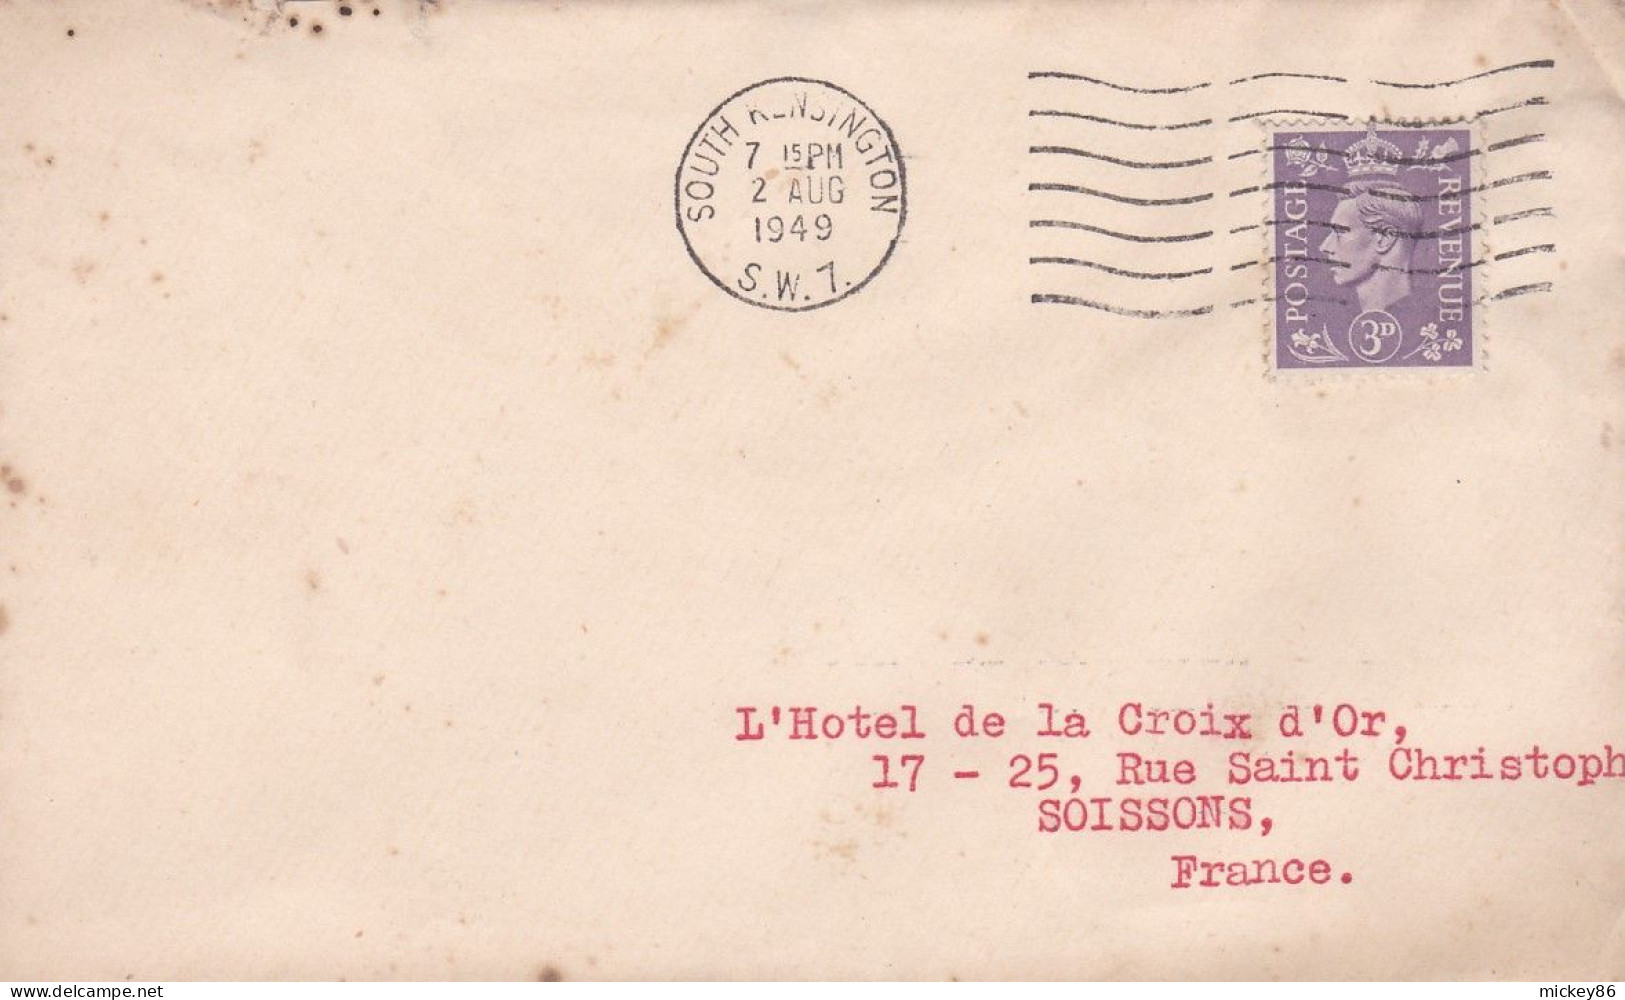 G-B- 1949--- Lettre SOUTH KENDINGTON  Pour Soissons-02 (France)-timbres ,cachet  Date  2- AUG -1949-- - Lettres & Documents